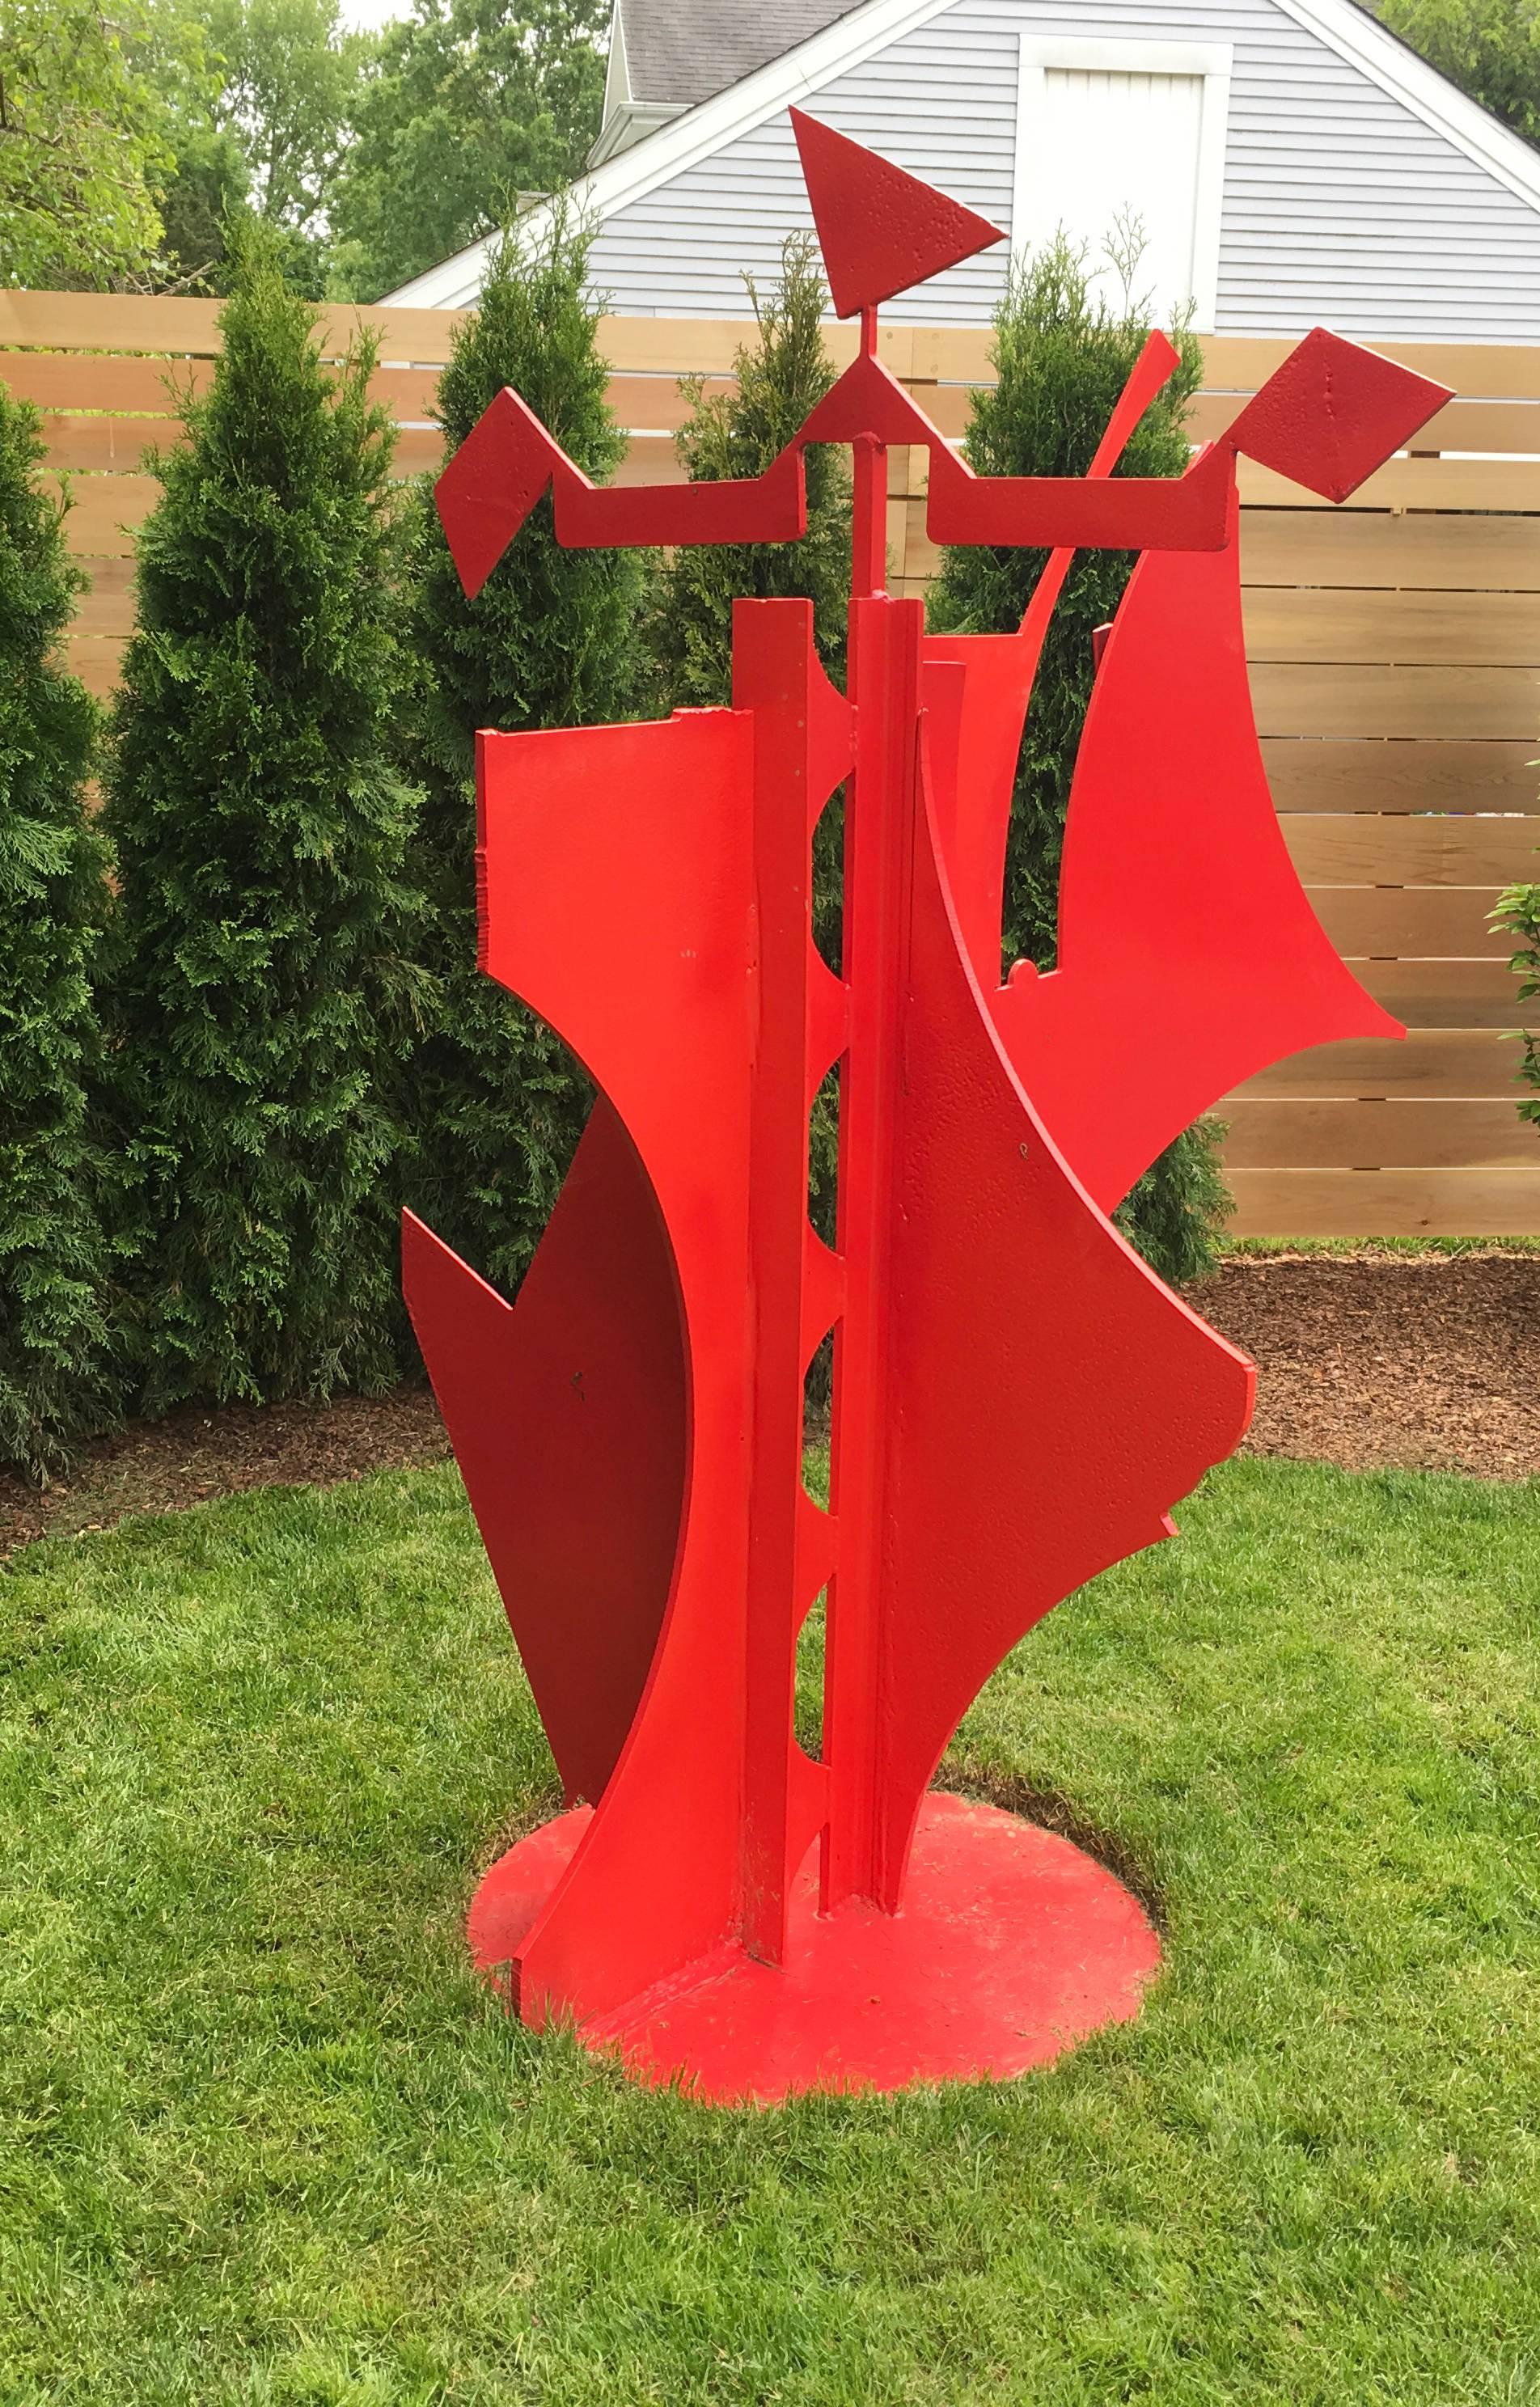 red metal sculpture